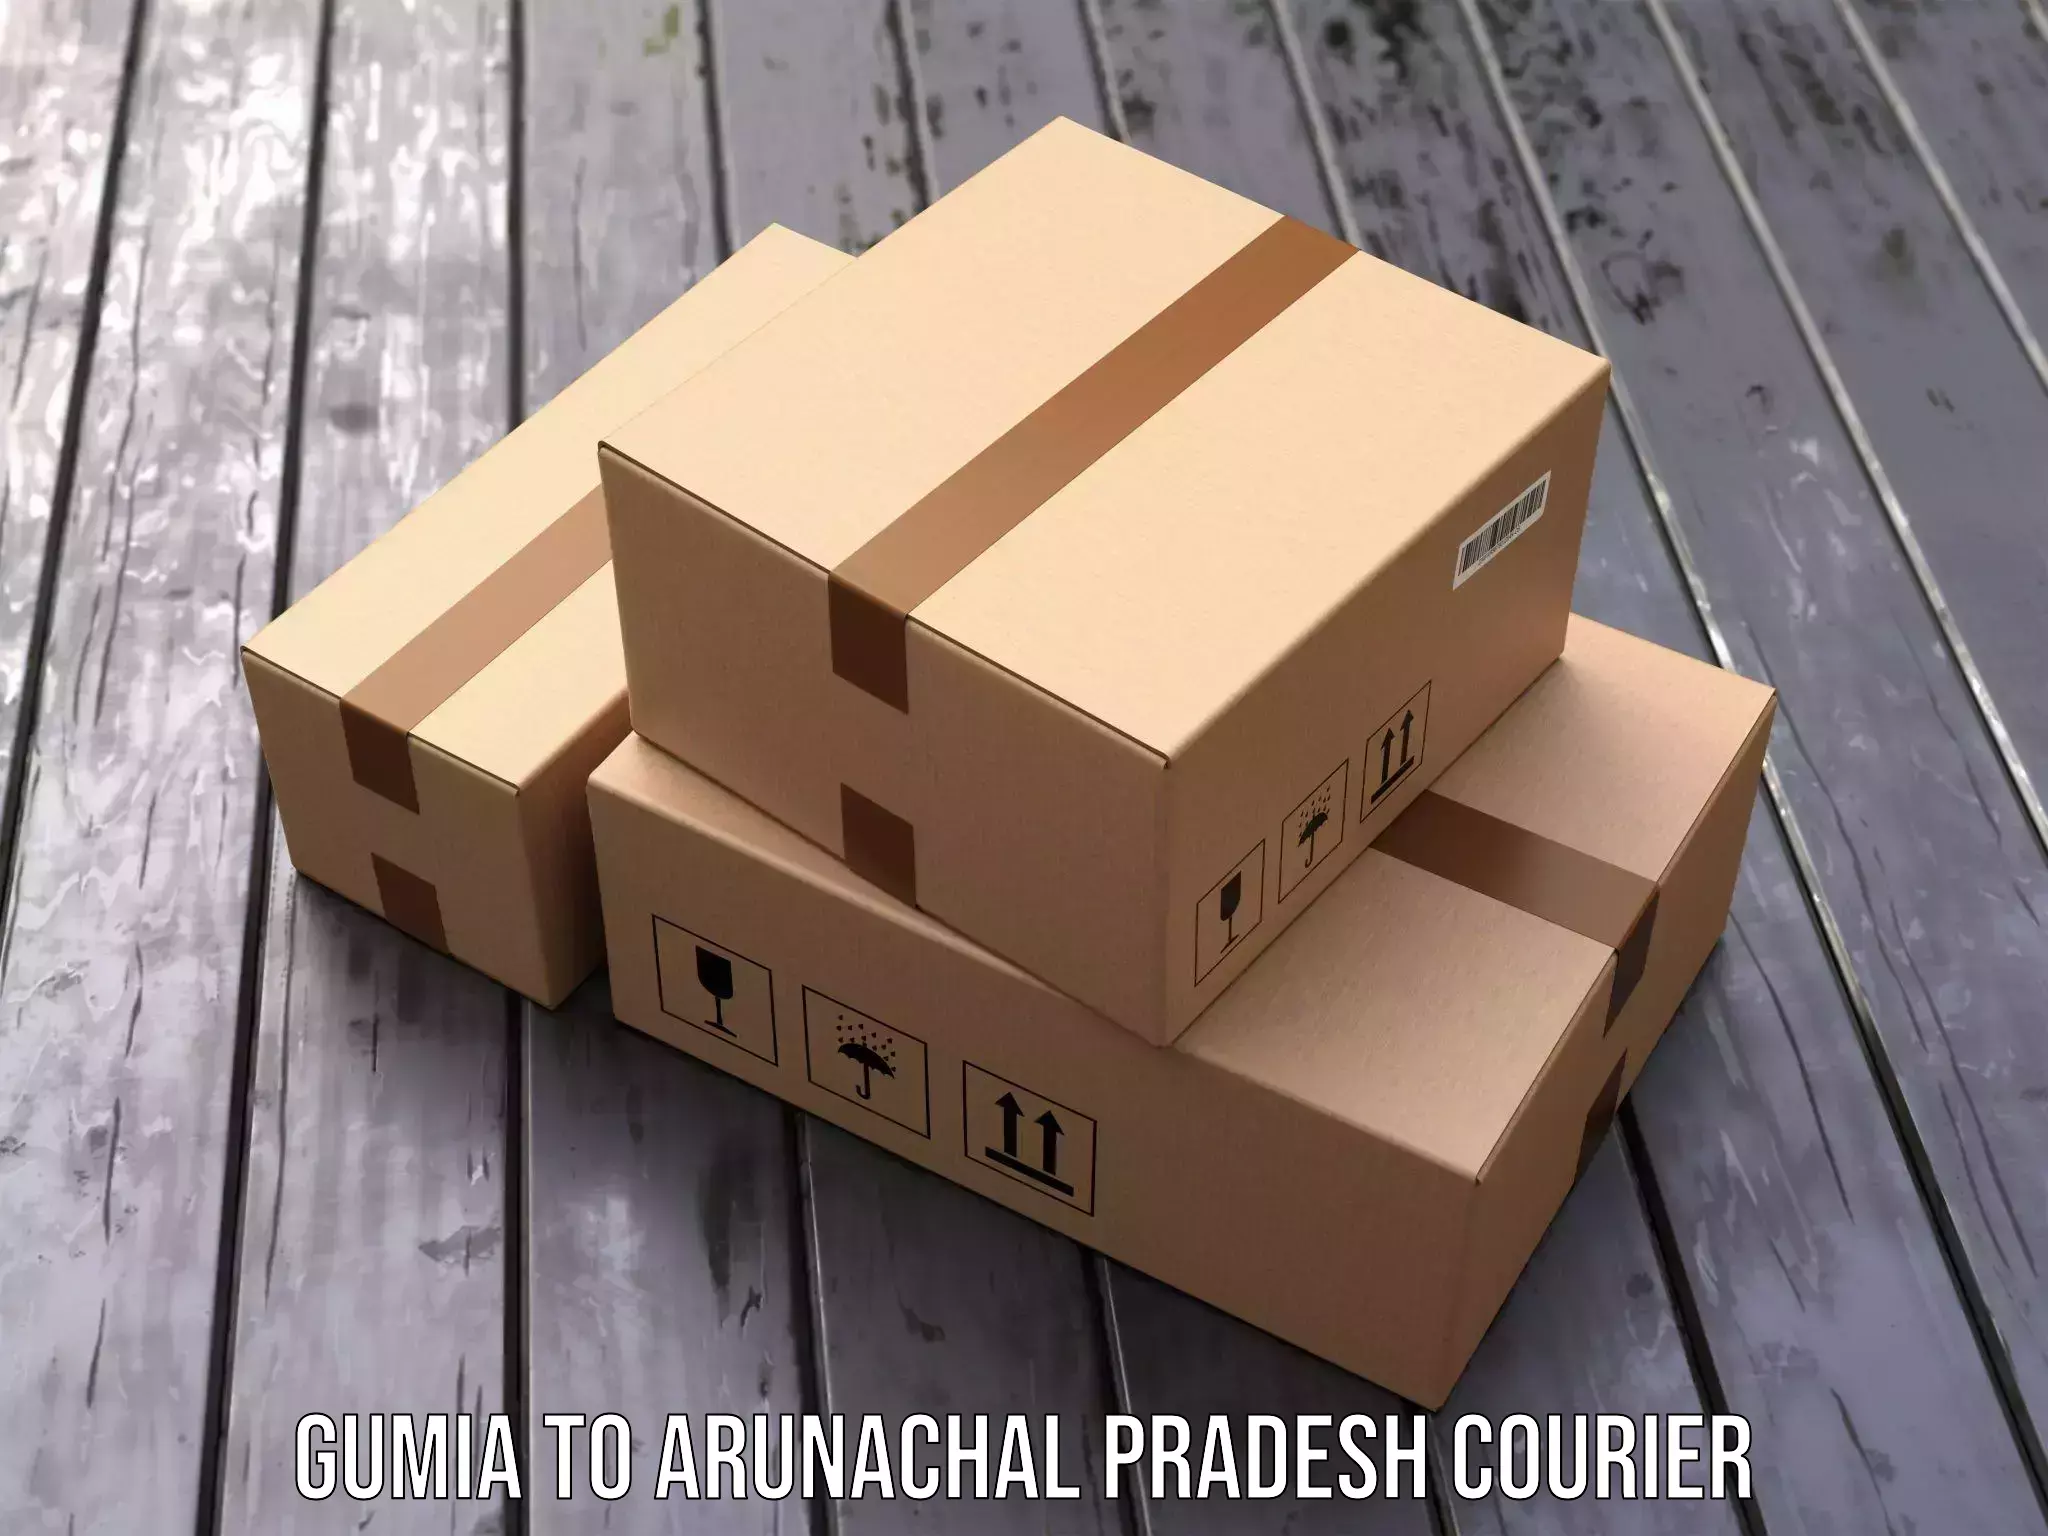 Quick parcel dispatch in Gumia to Arunachal Pradesh